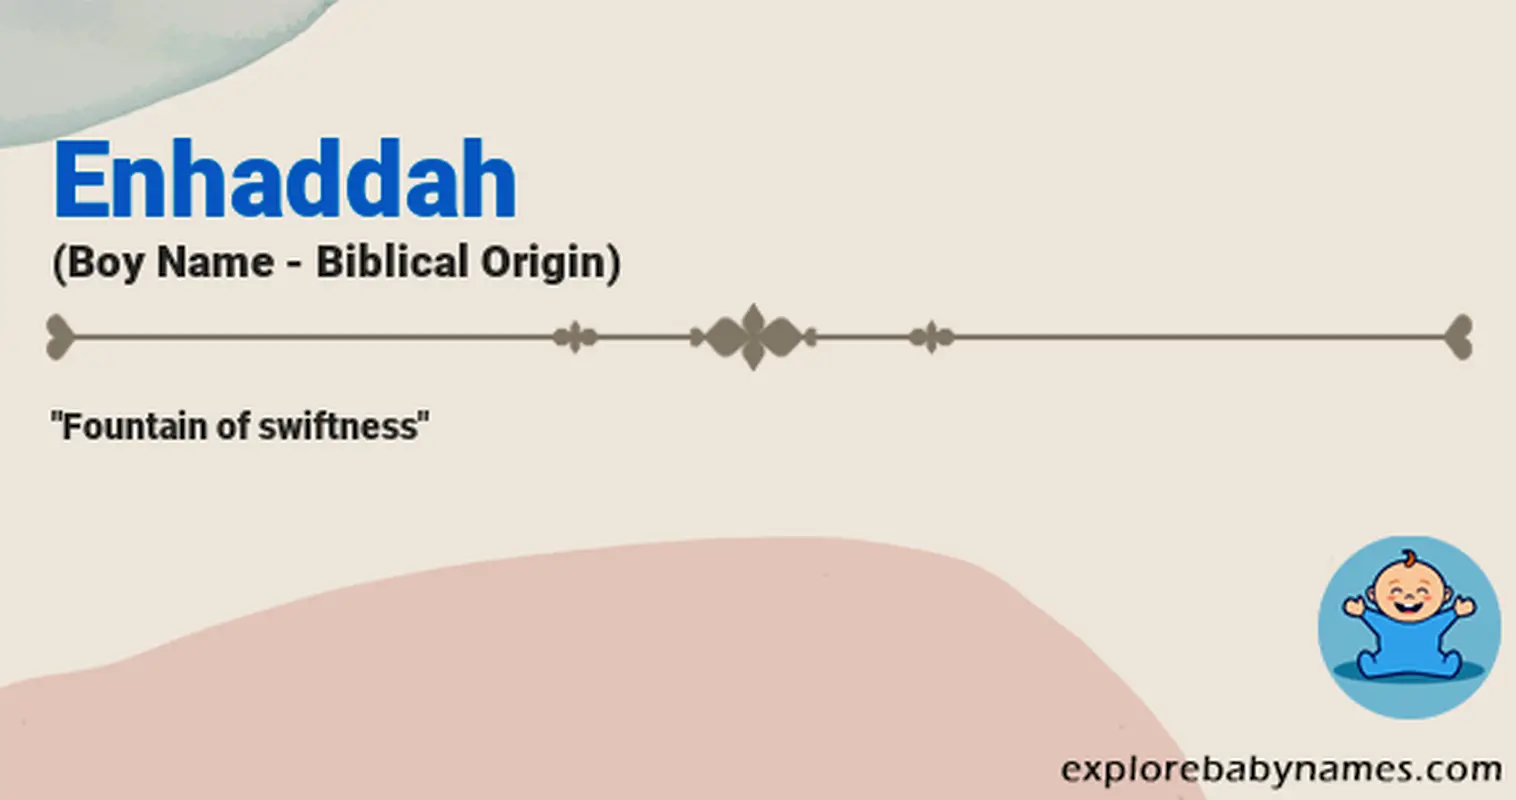 Meaning of Enhaddah